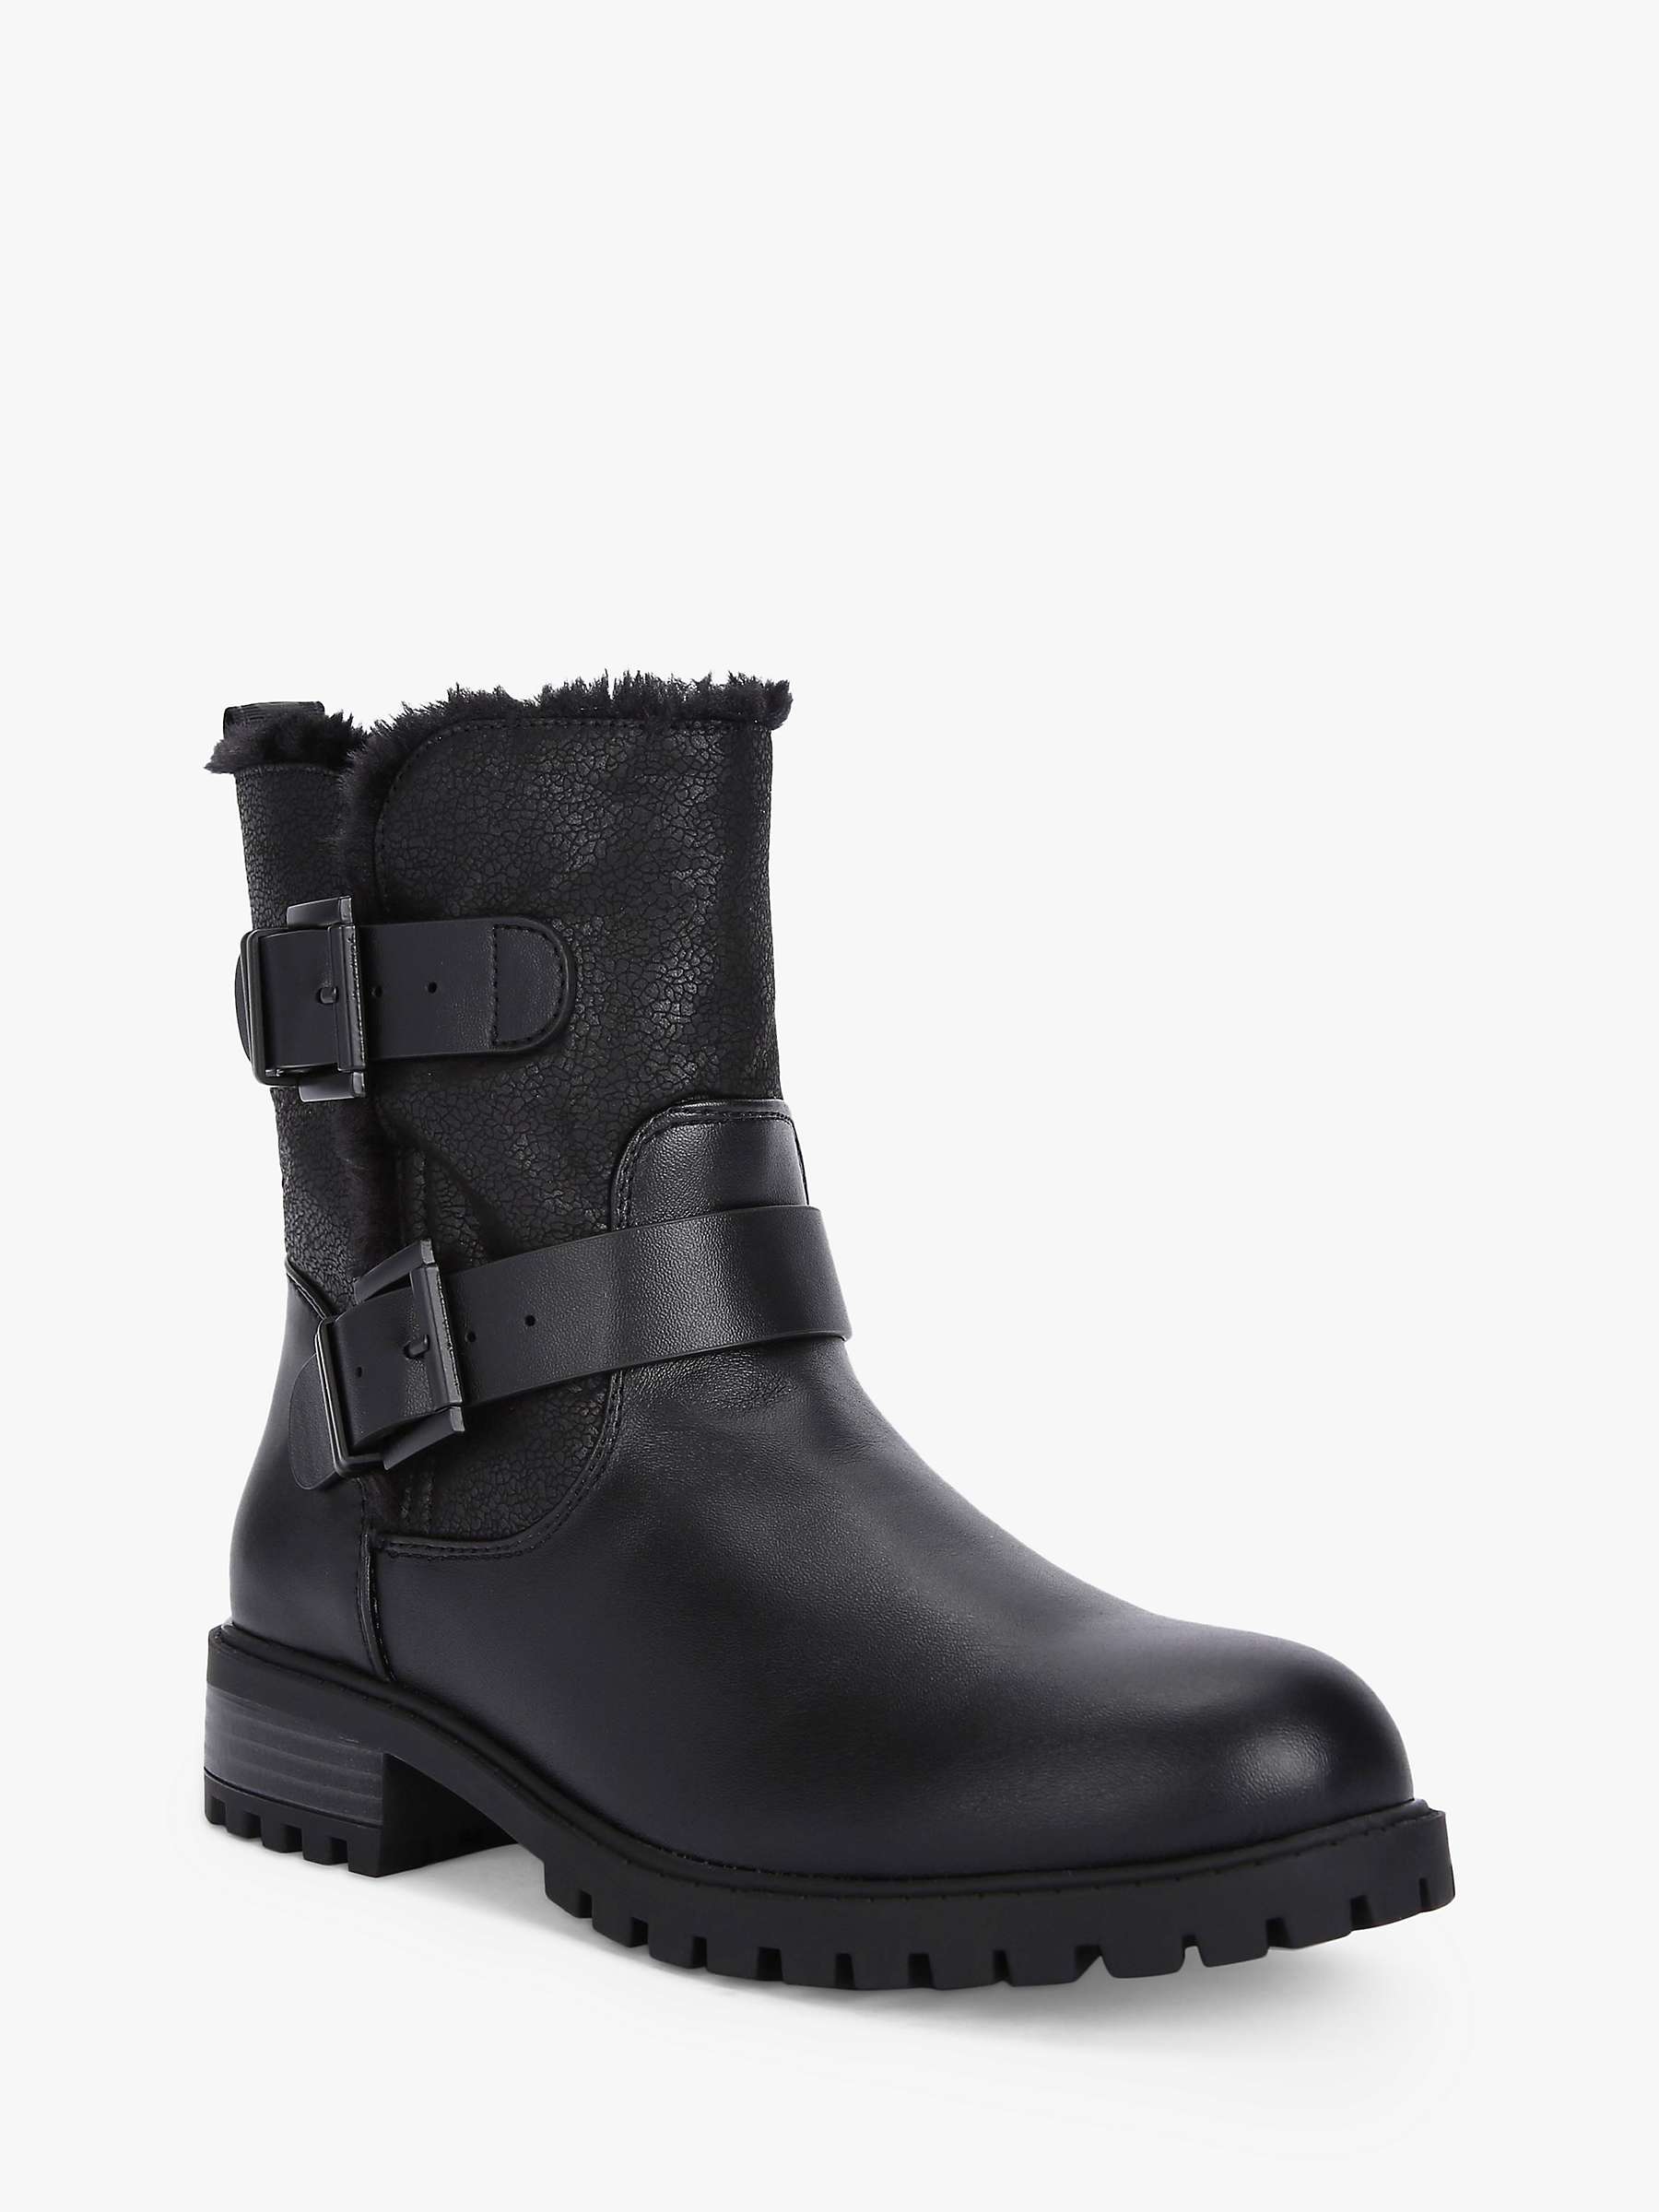 Buy KG Kurt Geiger Snug Ankle Boots, Black Online at johnlewis.com